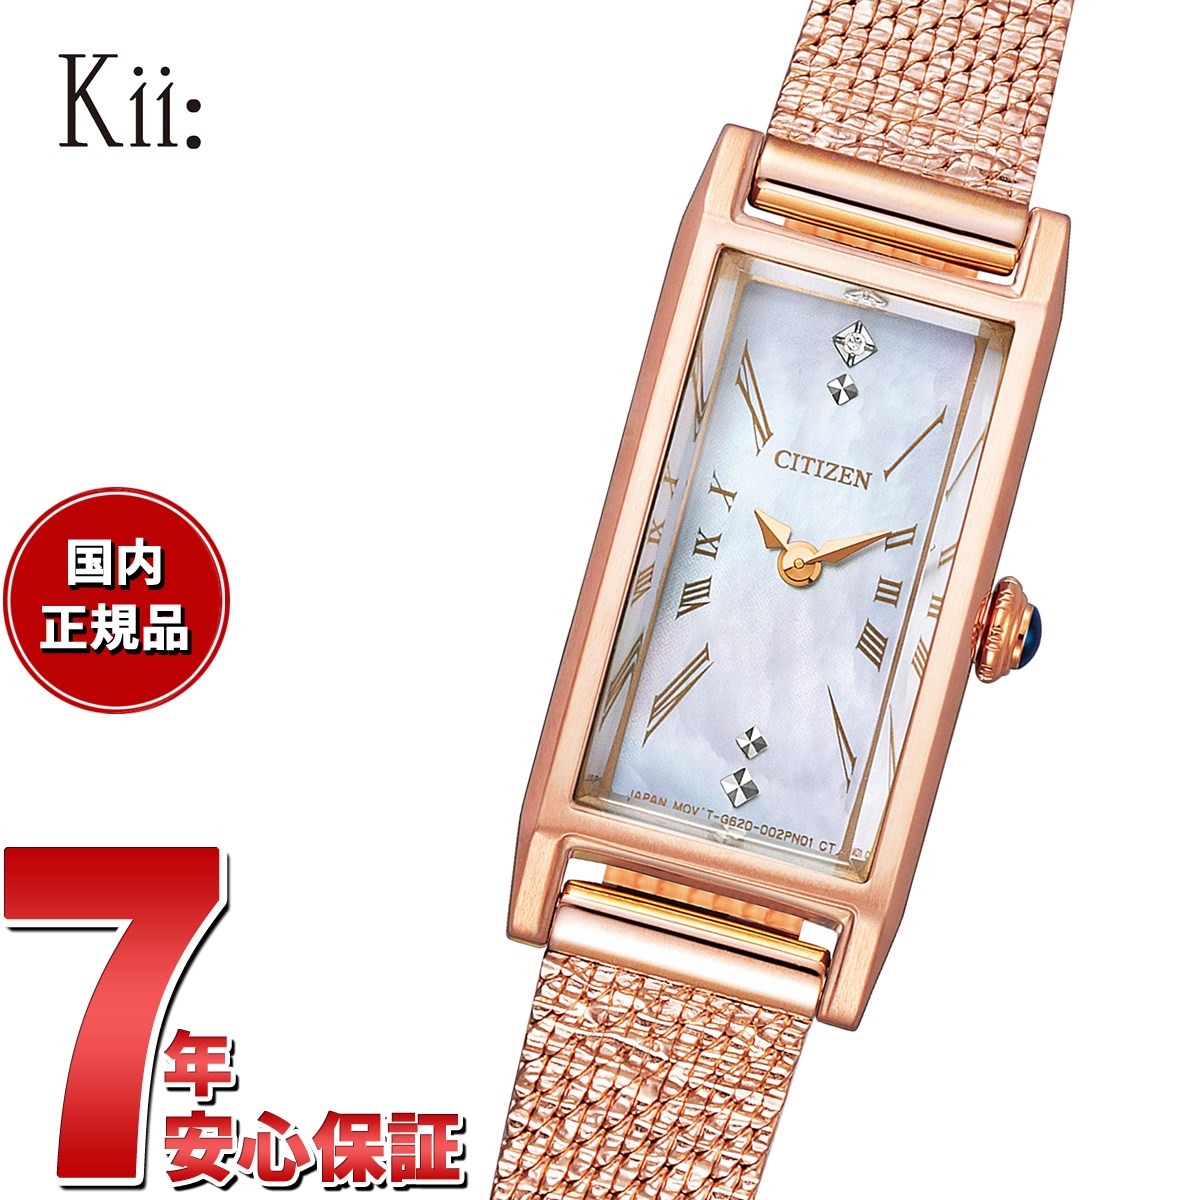 シチズン キー CITIZEN Kii: エコドライブ 限定モデル 腕時計 レディース EG7045-62D Falling snowflakes  Limited